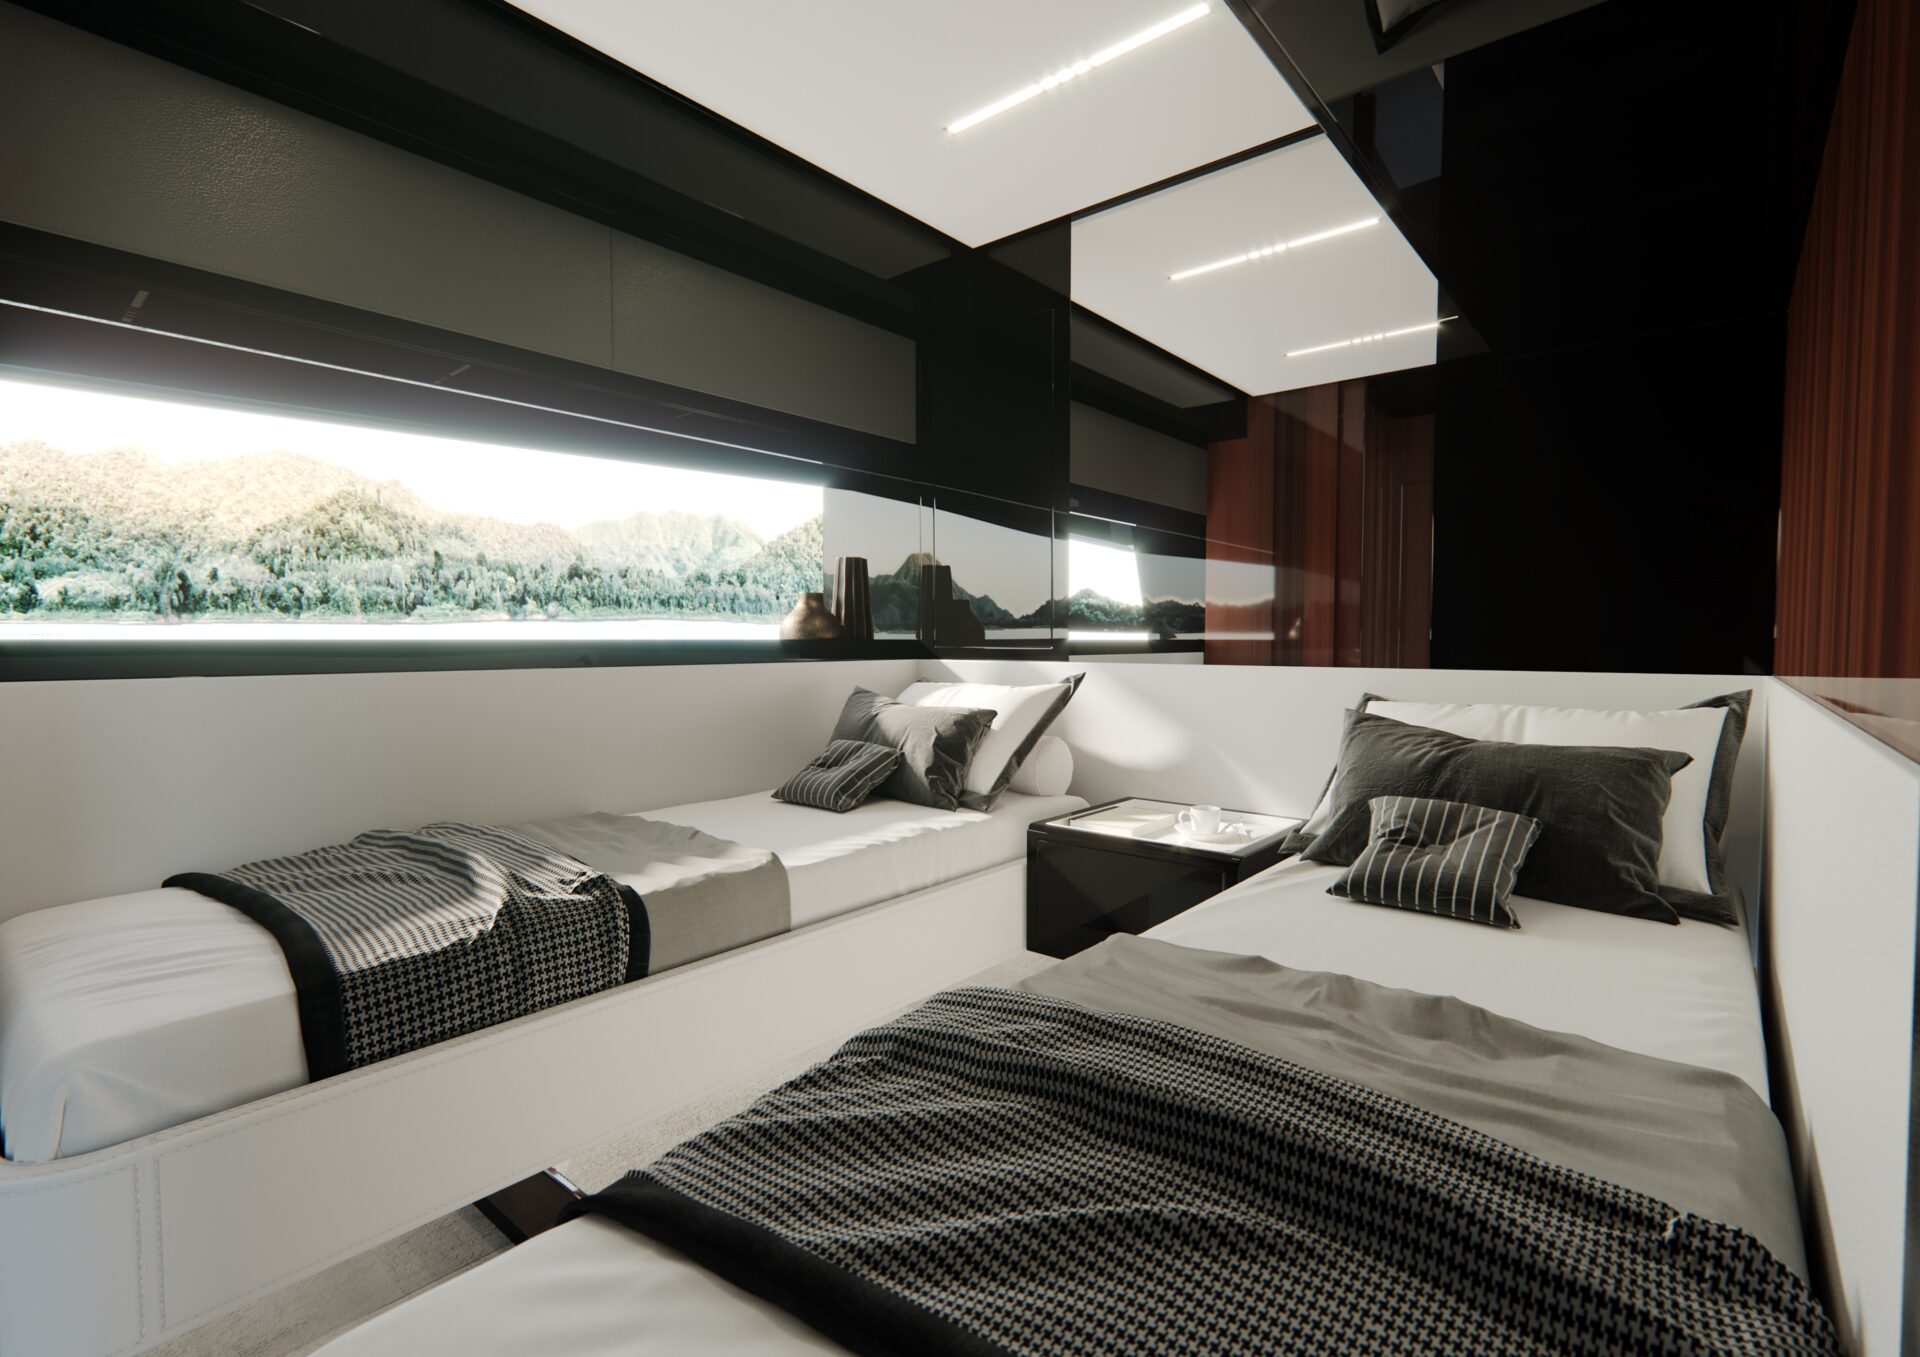 Riva 76' Perseo Super_Interiors OPT version - double cabin